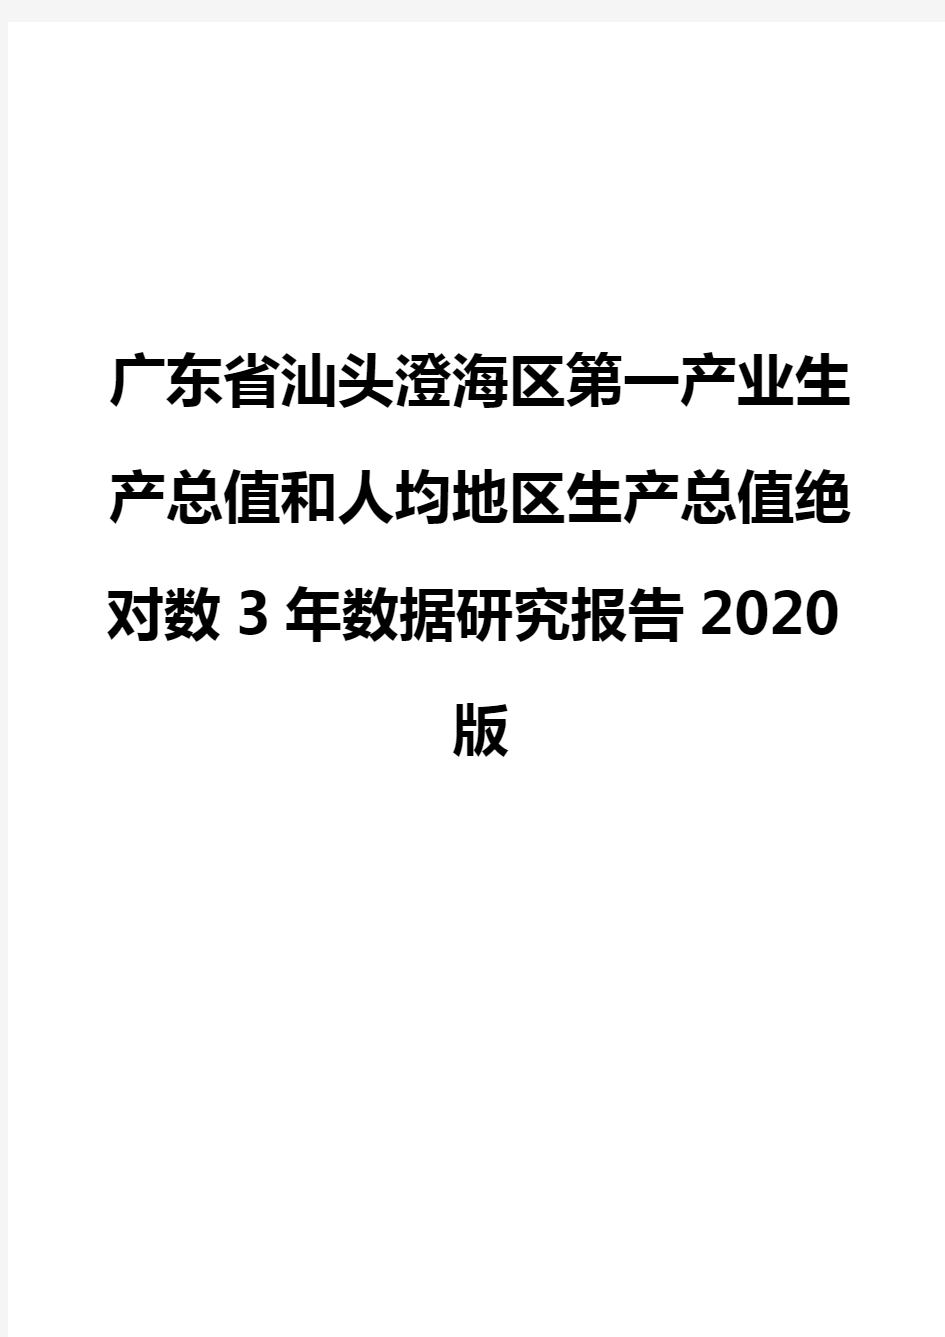 广东省汕头澄海区第一产业生产总值和人均地区生产总值绝对数3年数据研究报告2020版